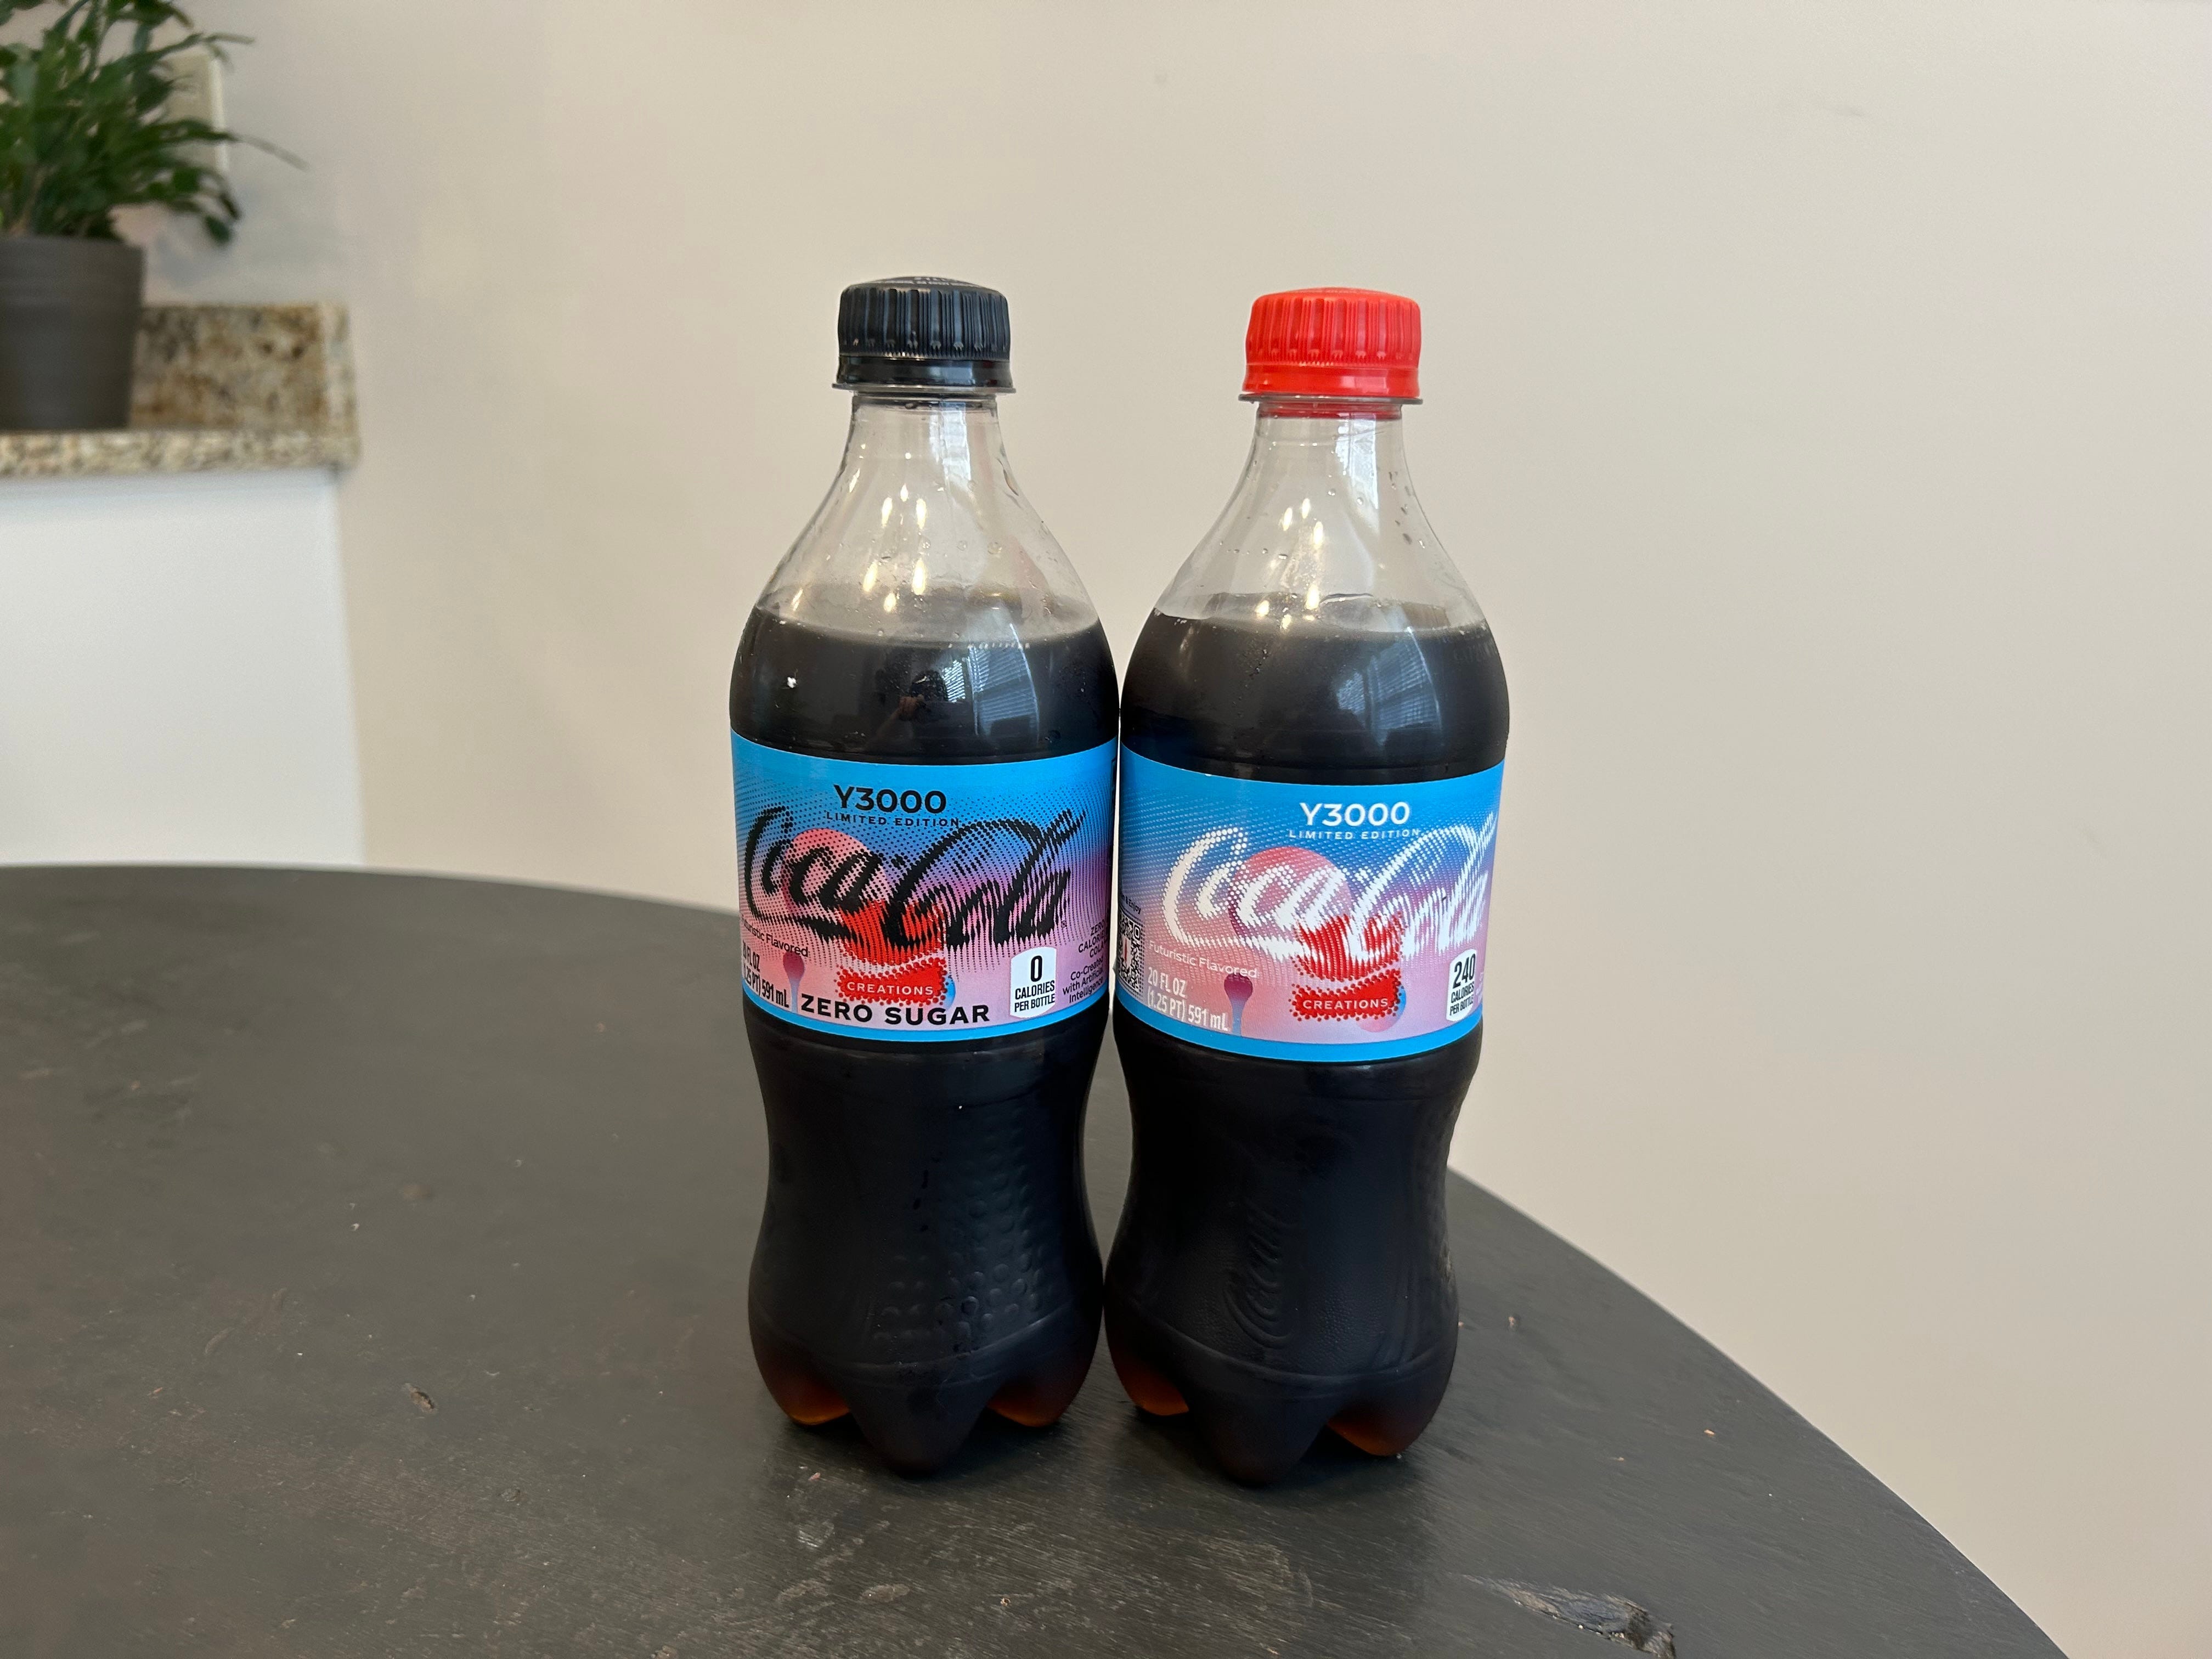 die Flaschen Coca-Cola y3000 und die zuckerfreie Version